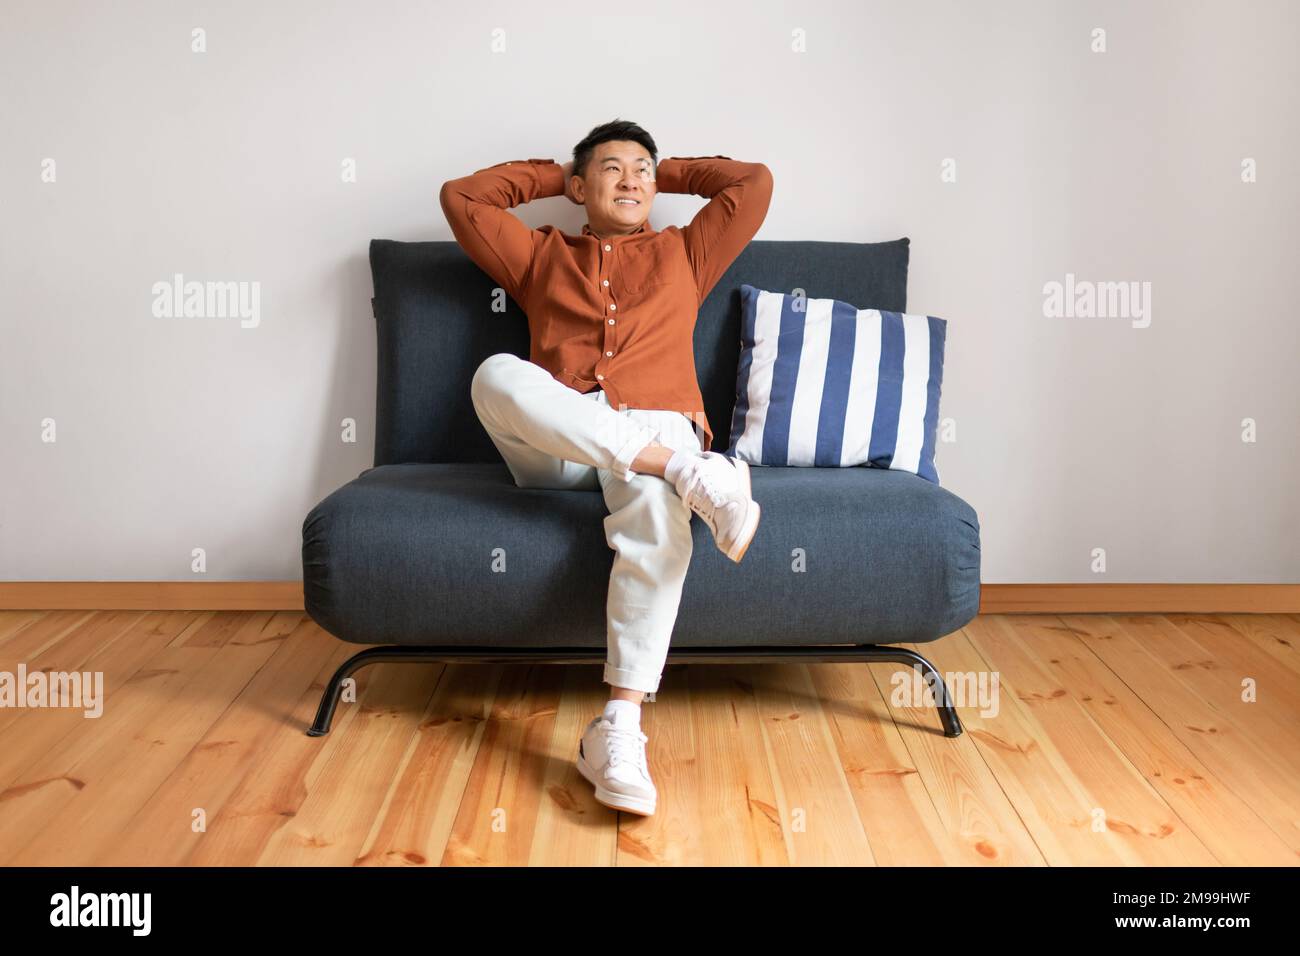 Week-end paresseux. Joyeux homme asiatique mûr se détendant avec les mains derrière la tête, assis sur un canapé au-dessus du mur blanc Banque D'Images